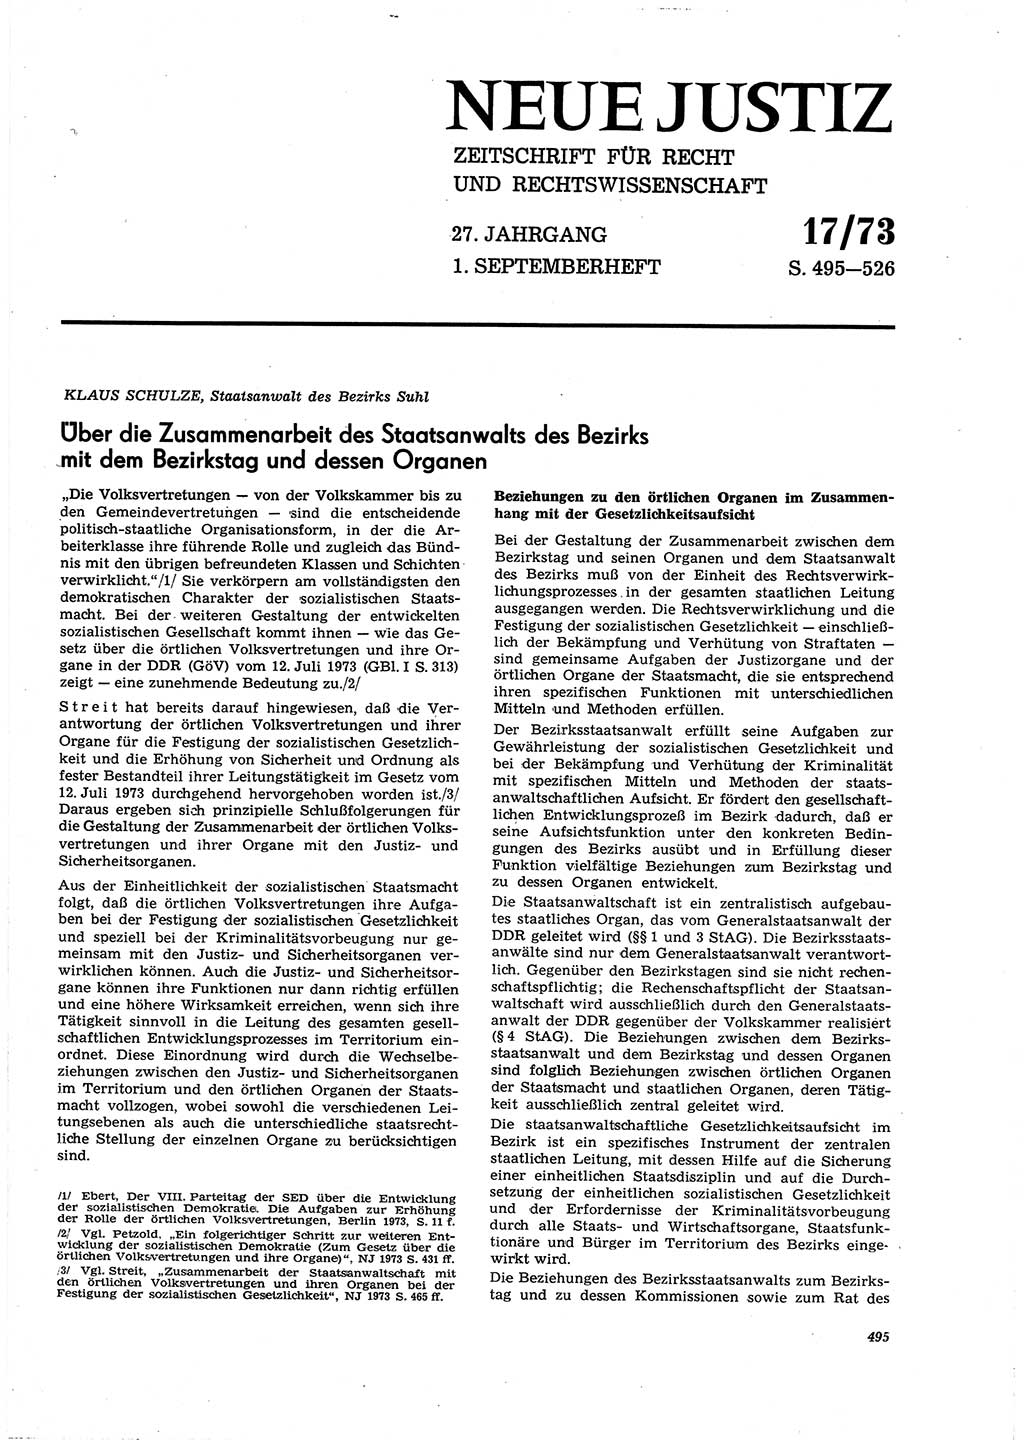 Neue Justiz (NJ), Zeitschrift für Recht und Rechtswissenschaft [Deutsche Demokratische Republik (DDR)], 27. Jahrgang 1973, Seite 495 (NJ DDR 1973, S. 495)